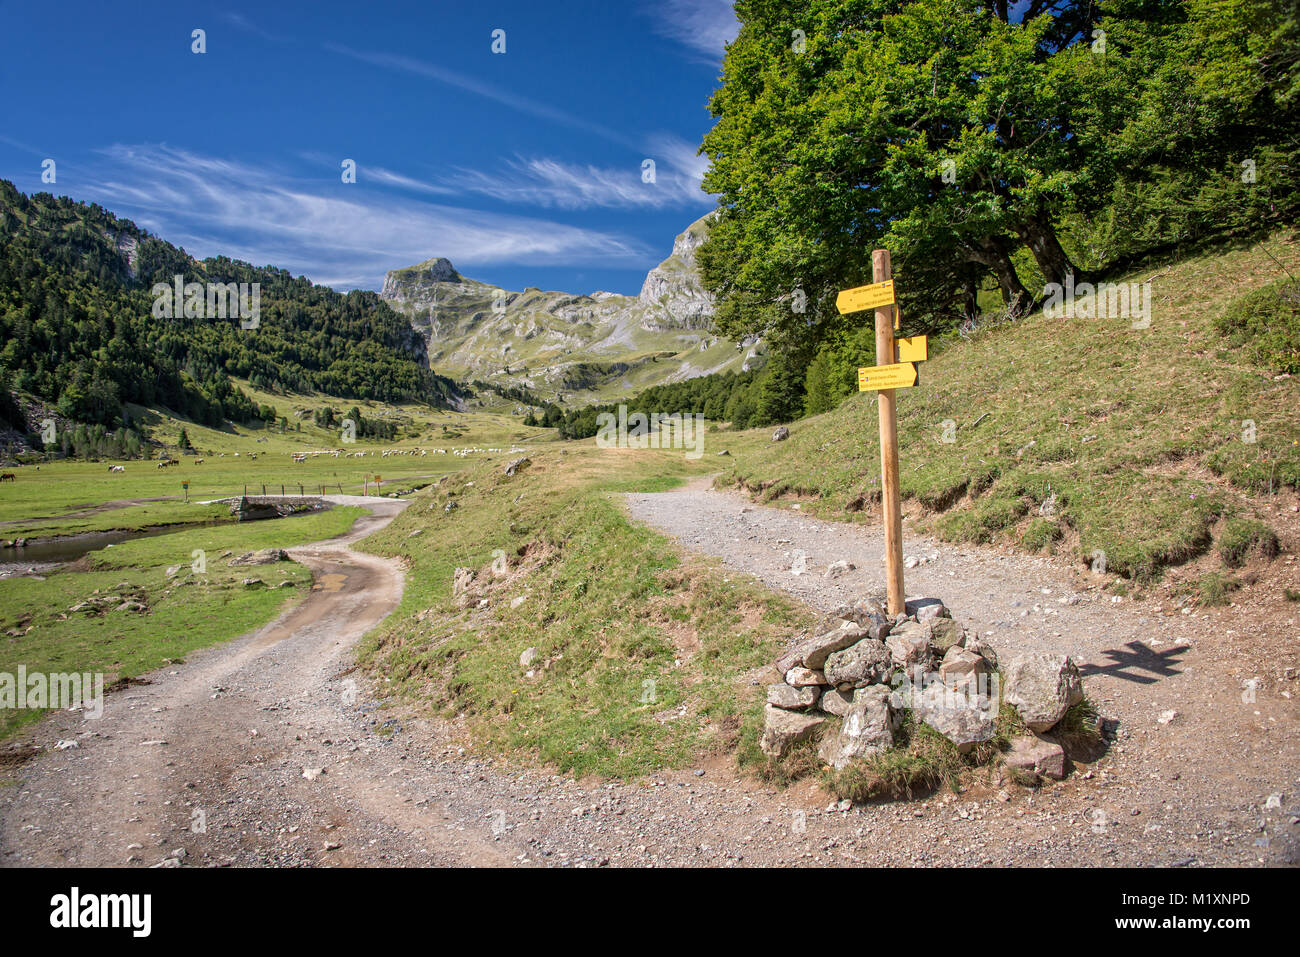 Randonnées direction, vallée d'Ossau, Pyrénées, France Banque D'Images